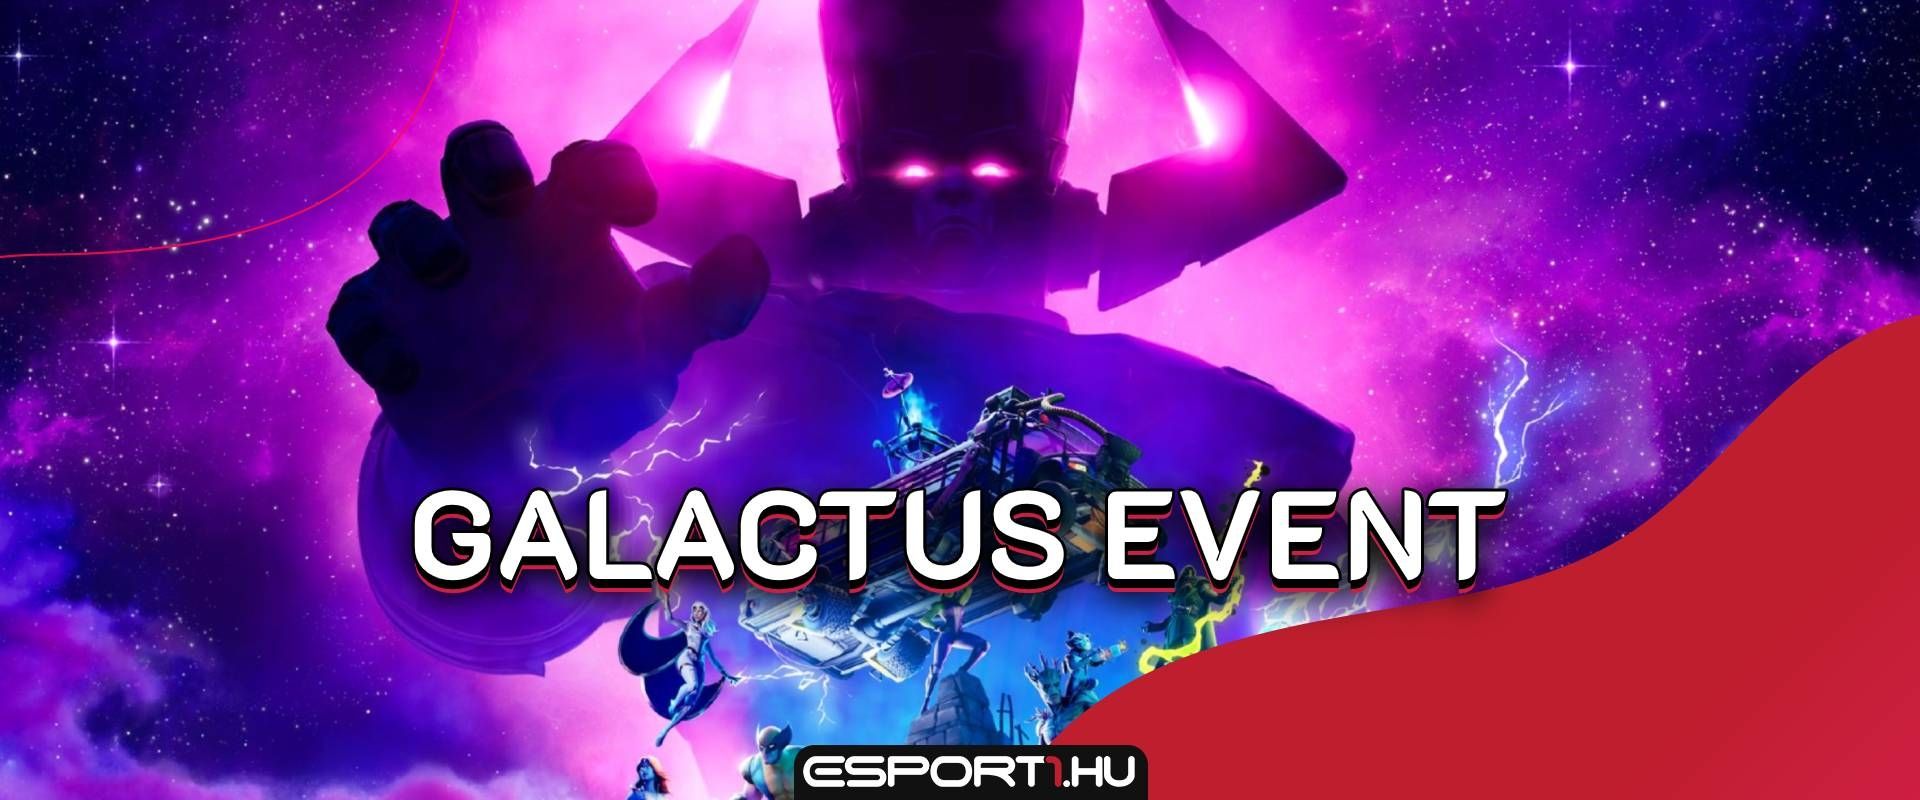 Megjelent a Galactus event visszaszámlálója, megvan a pontos időpont